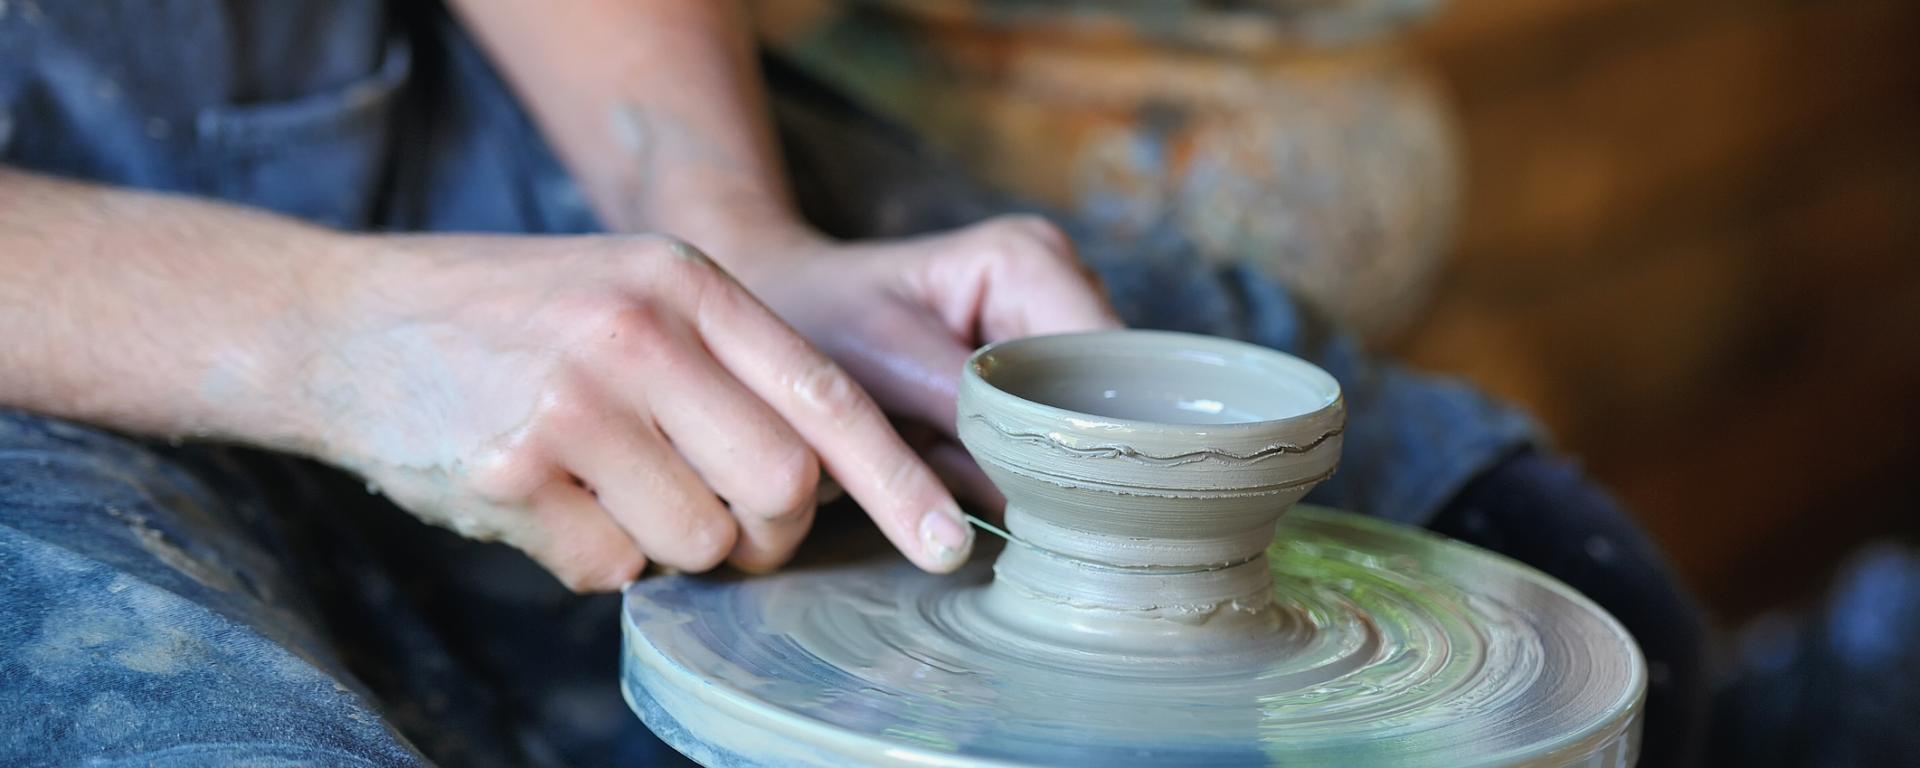 Händer som drejar keramik.